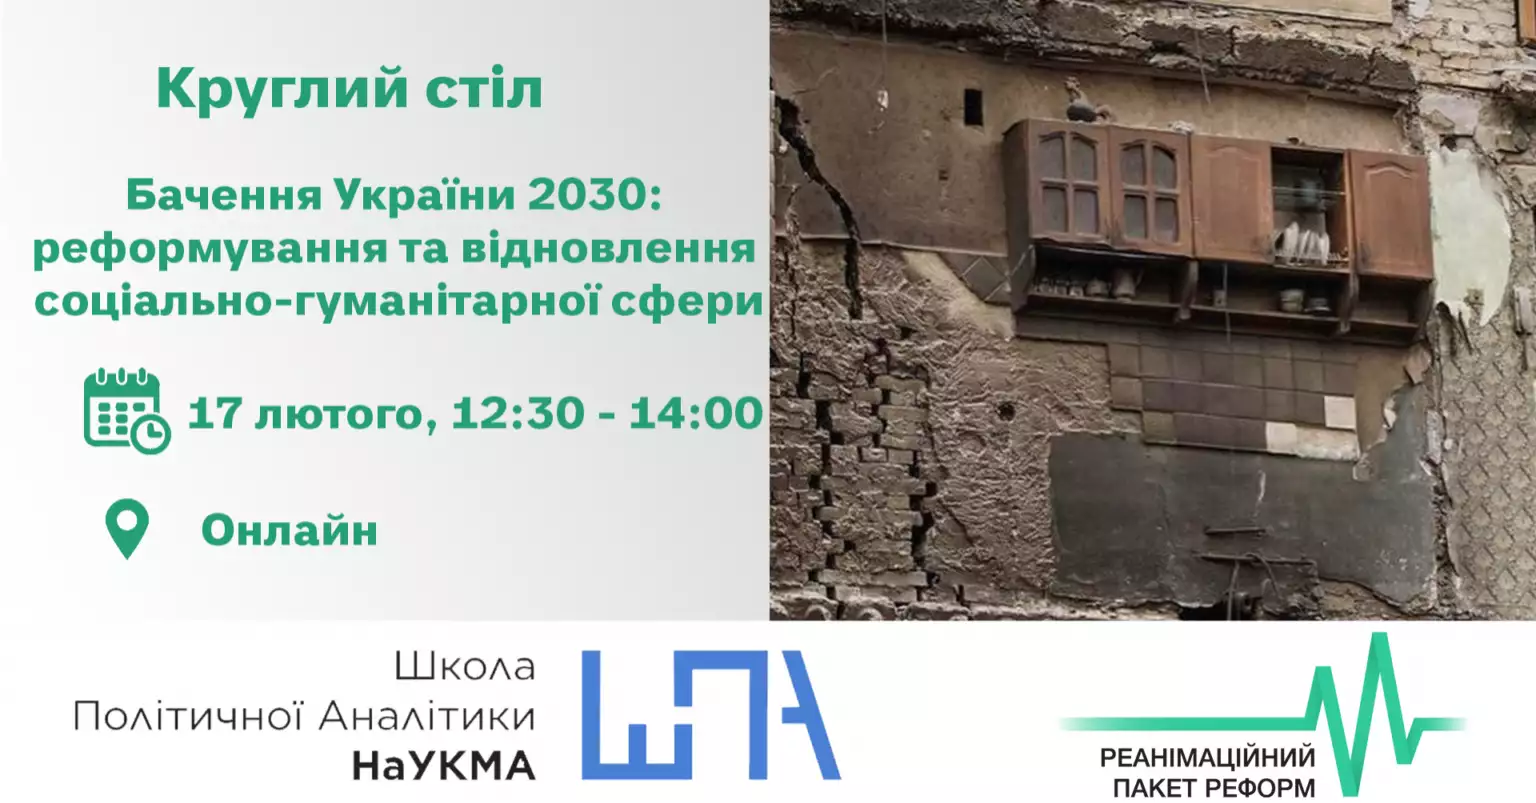 Круглий стіл «Бачення України 2030: реформування та відновлення соціально-гуманітарної сфери» — 17 лютого